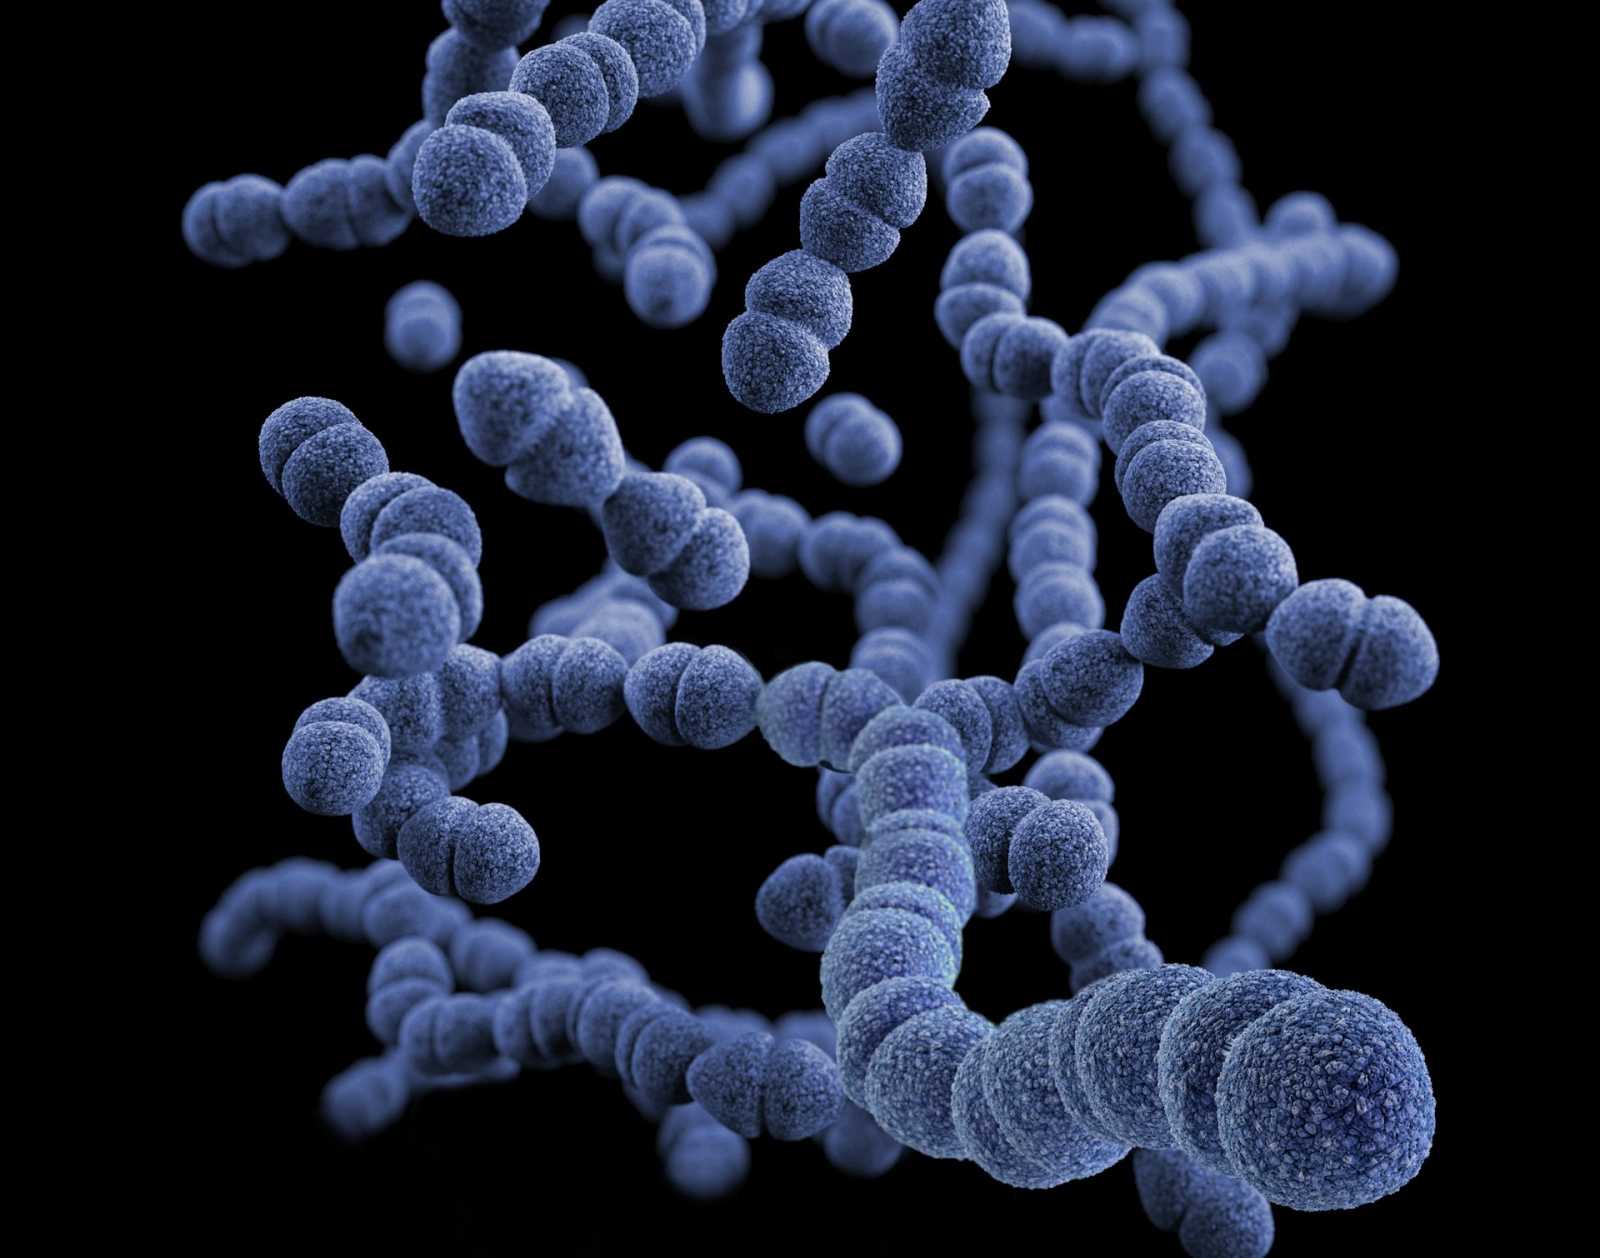 Illusztráció: háromdimenziós, számítógéppel generált kép a Gram-pozitív Streptococcus pneumoniae baktériumcsoportról | Fotó forrása: Unsplash